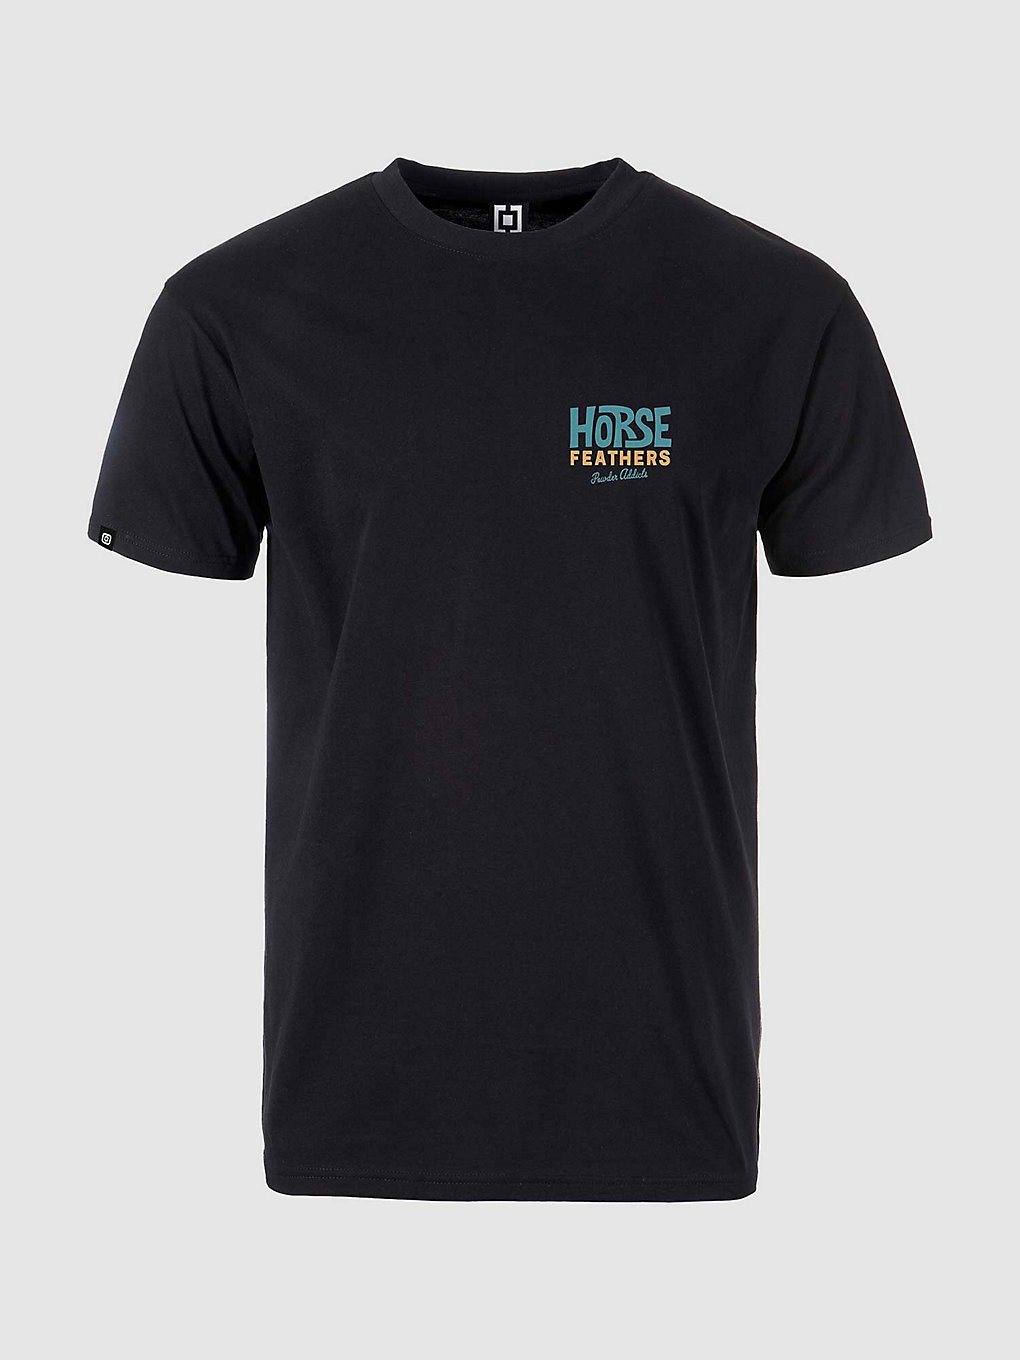 Horsefeathers Joyride T-Shirt black kaufen